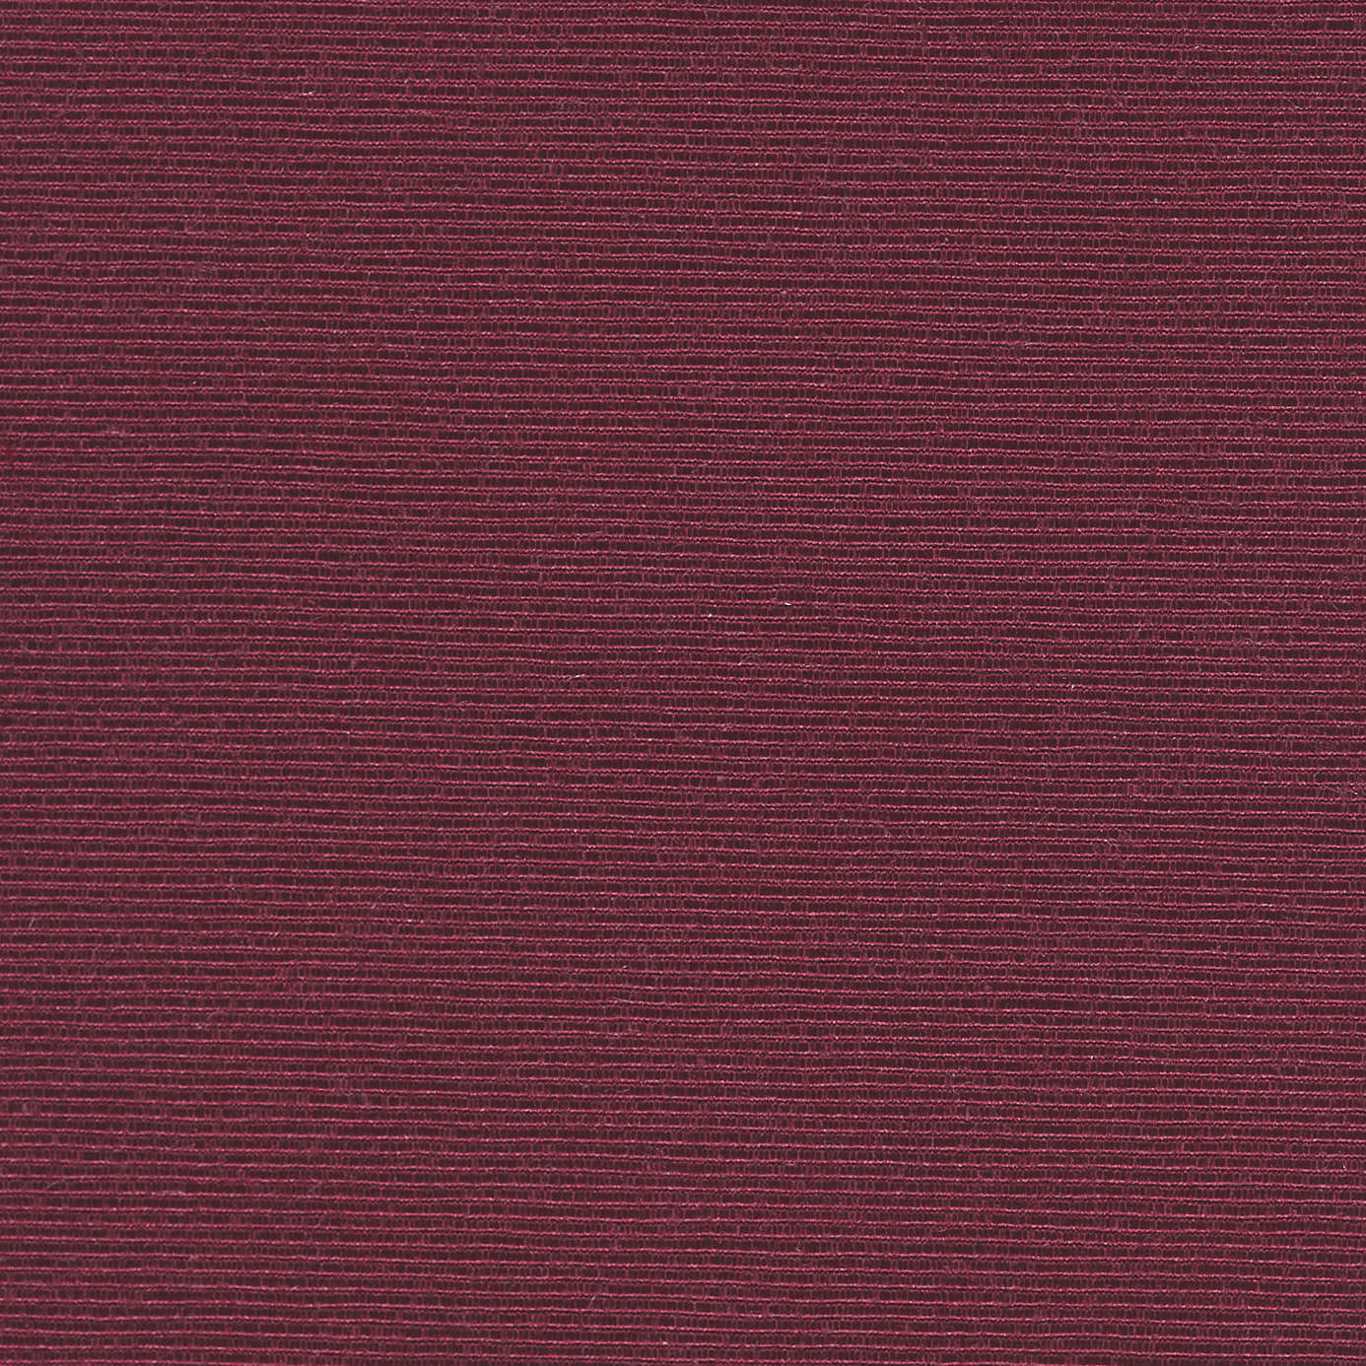 Optix Bordeaux Fabric by HAR